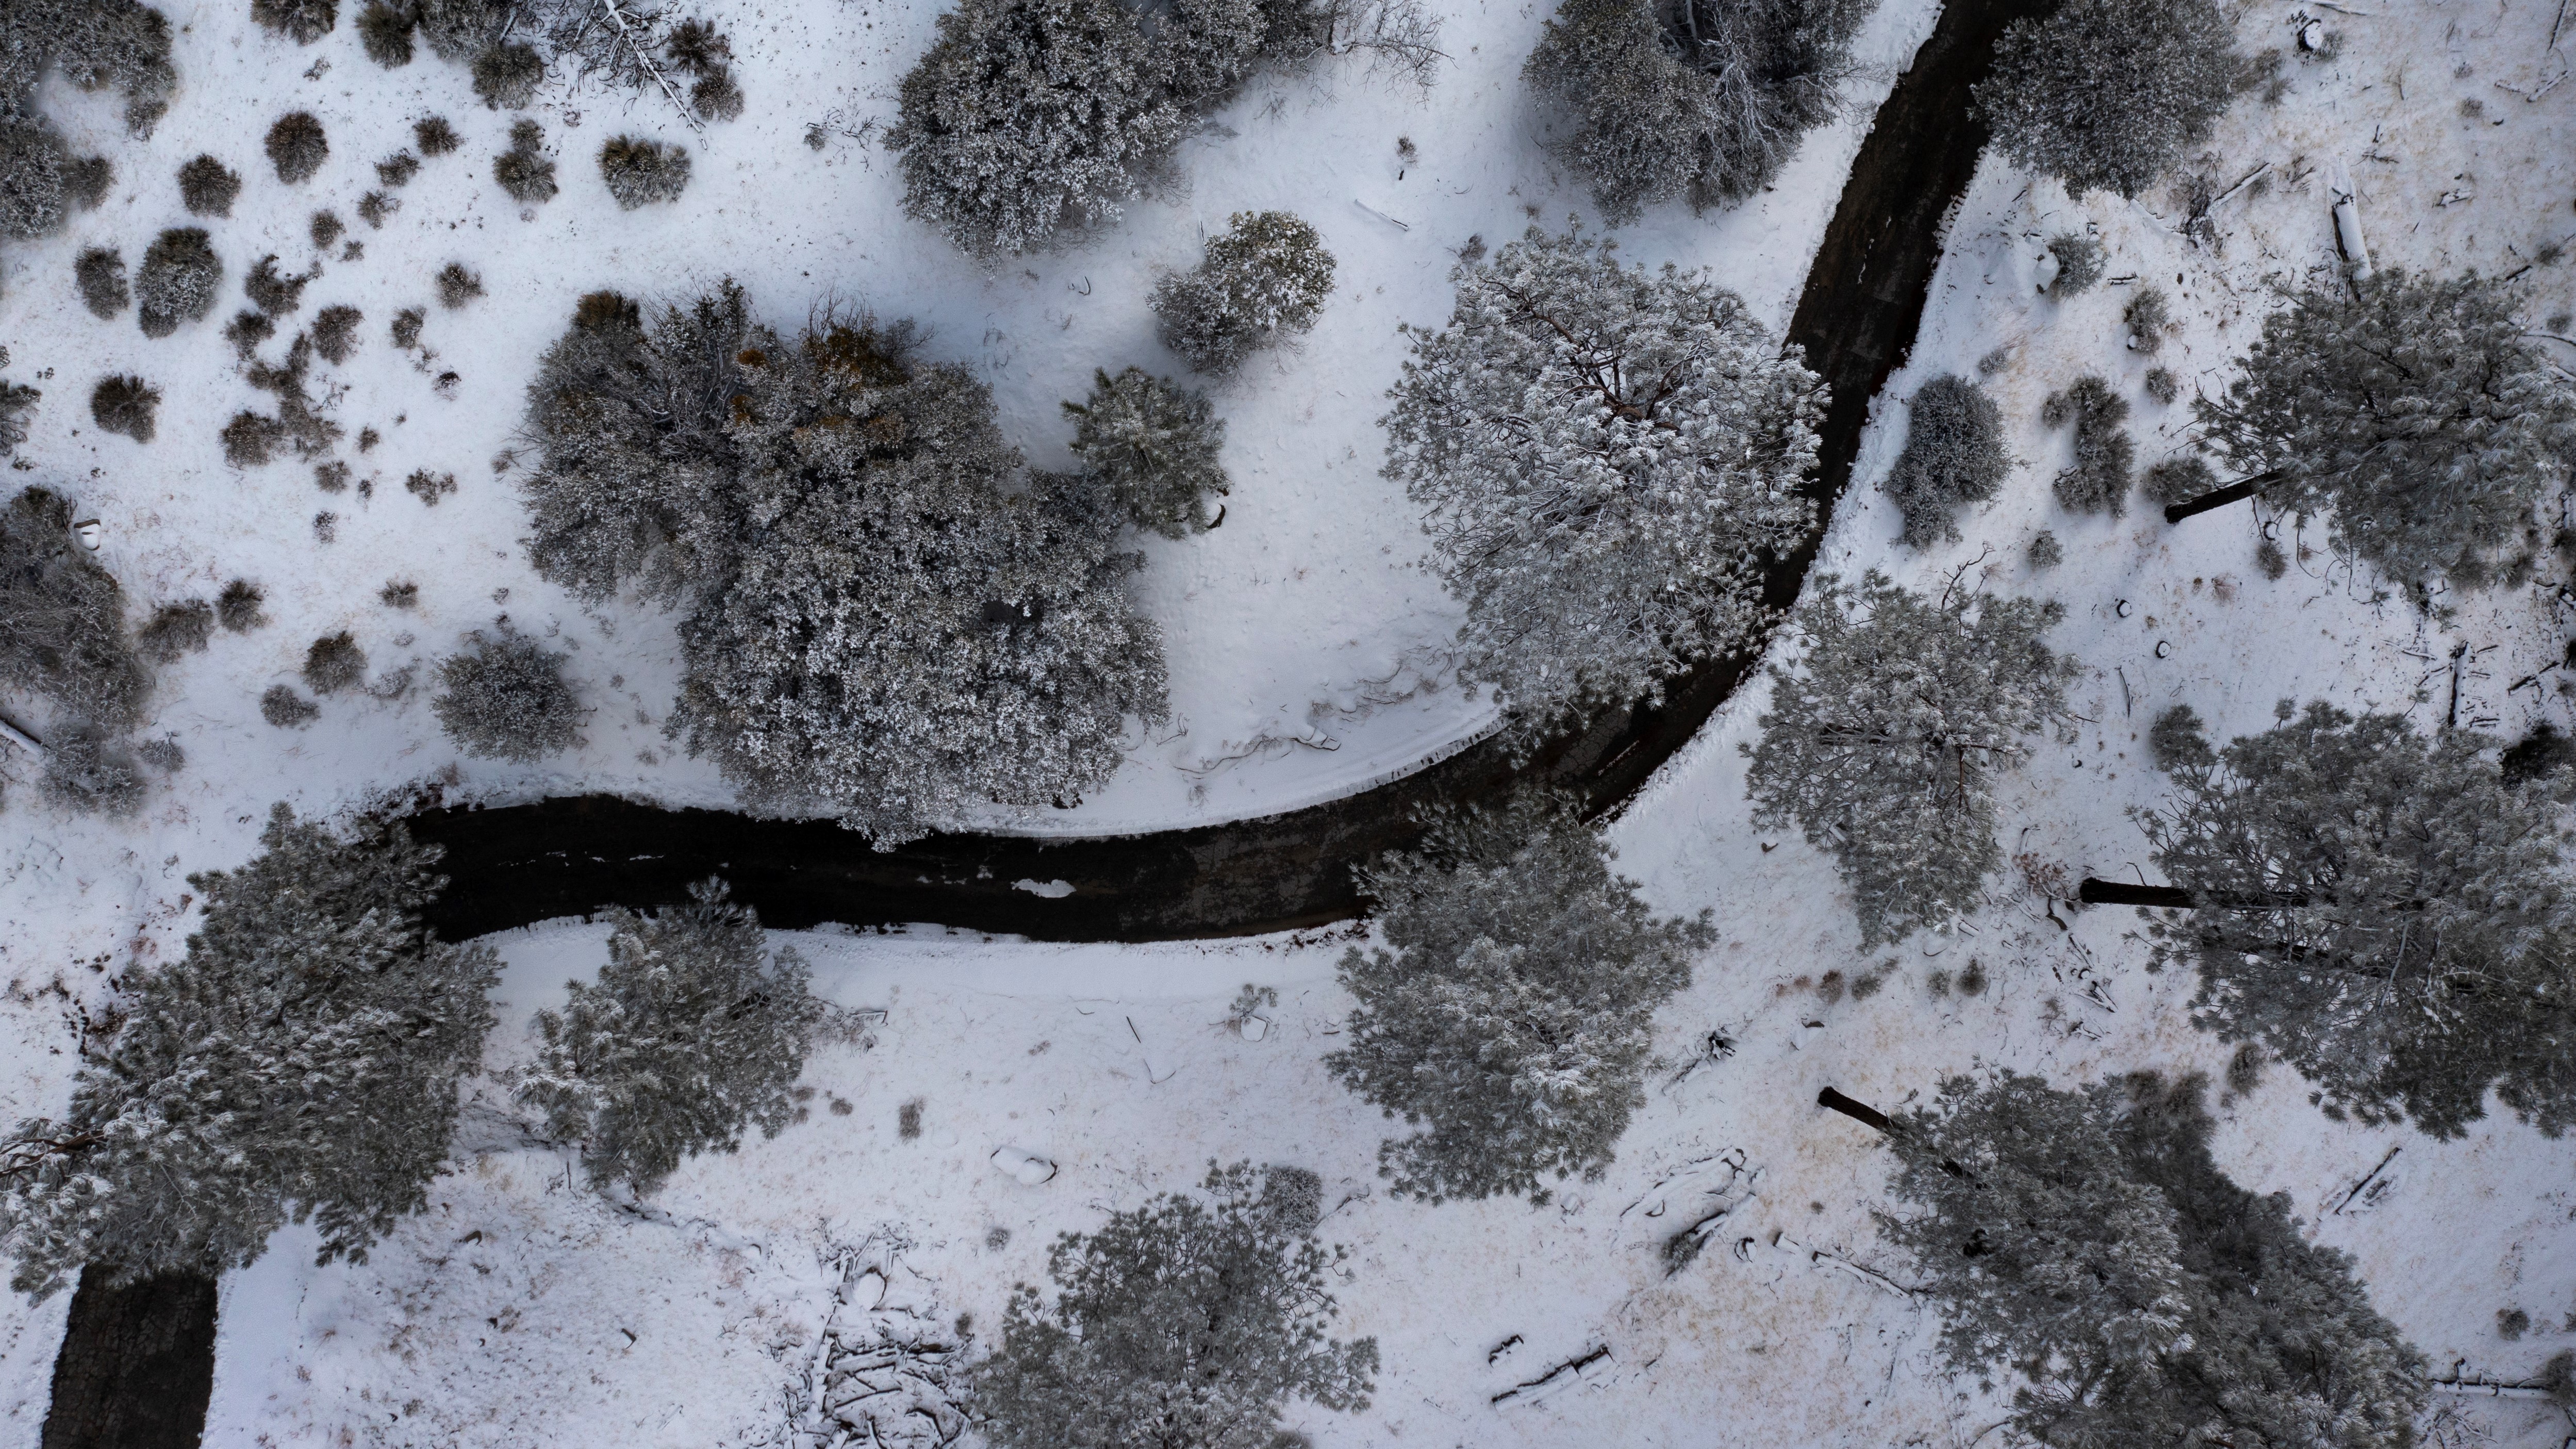 Sierra Nevada bajo el foco: Descubriendo La Sociedad de la Nieve